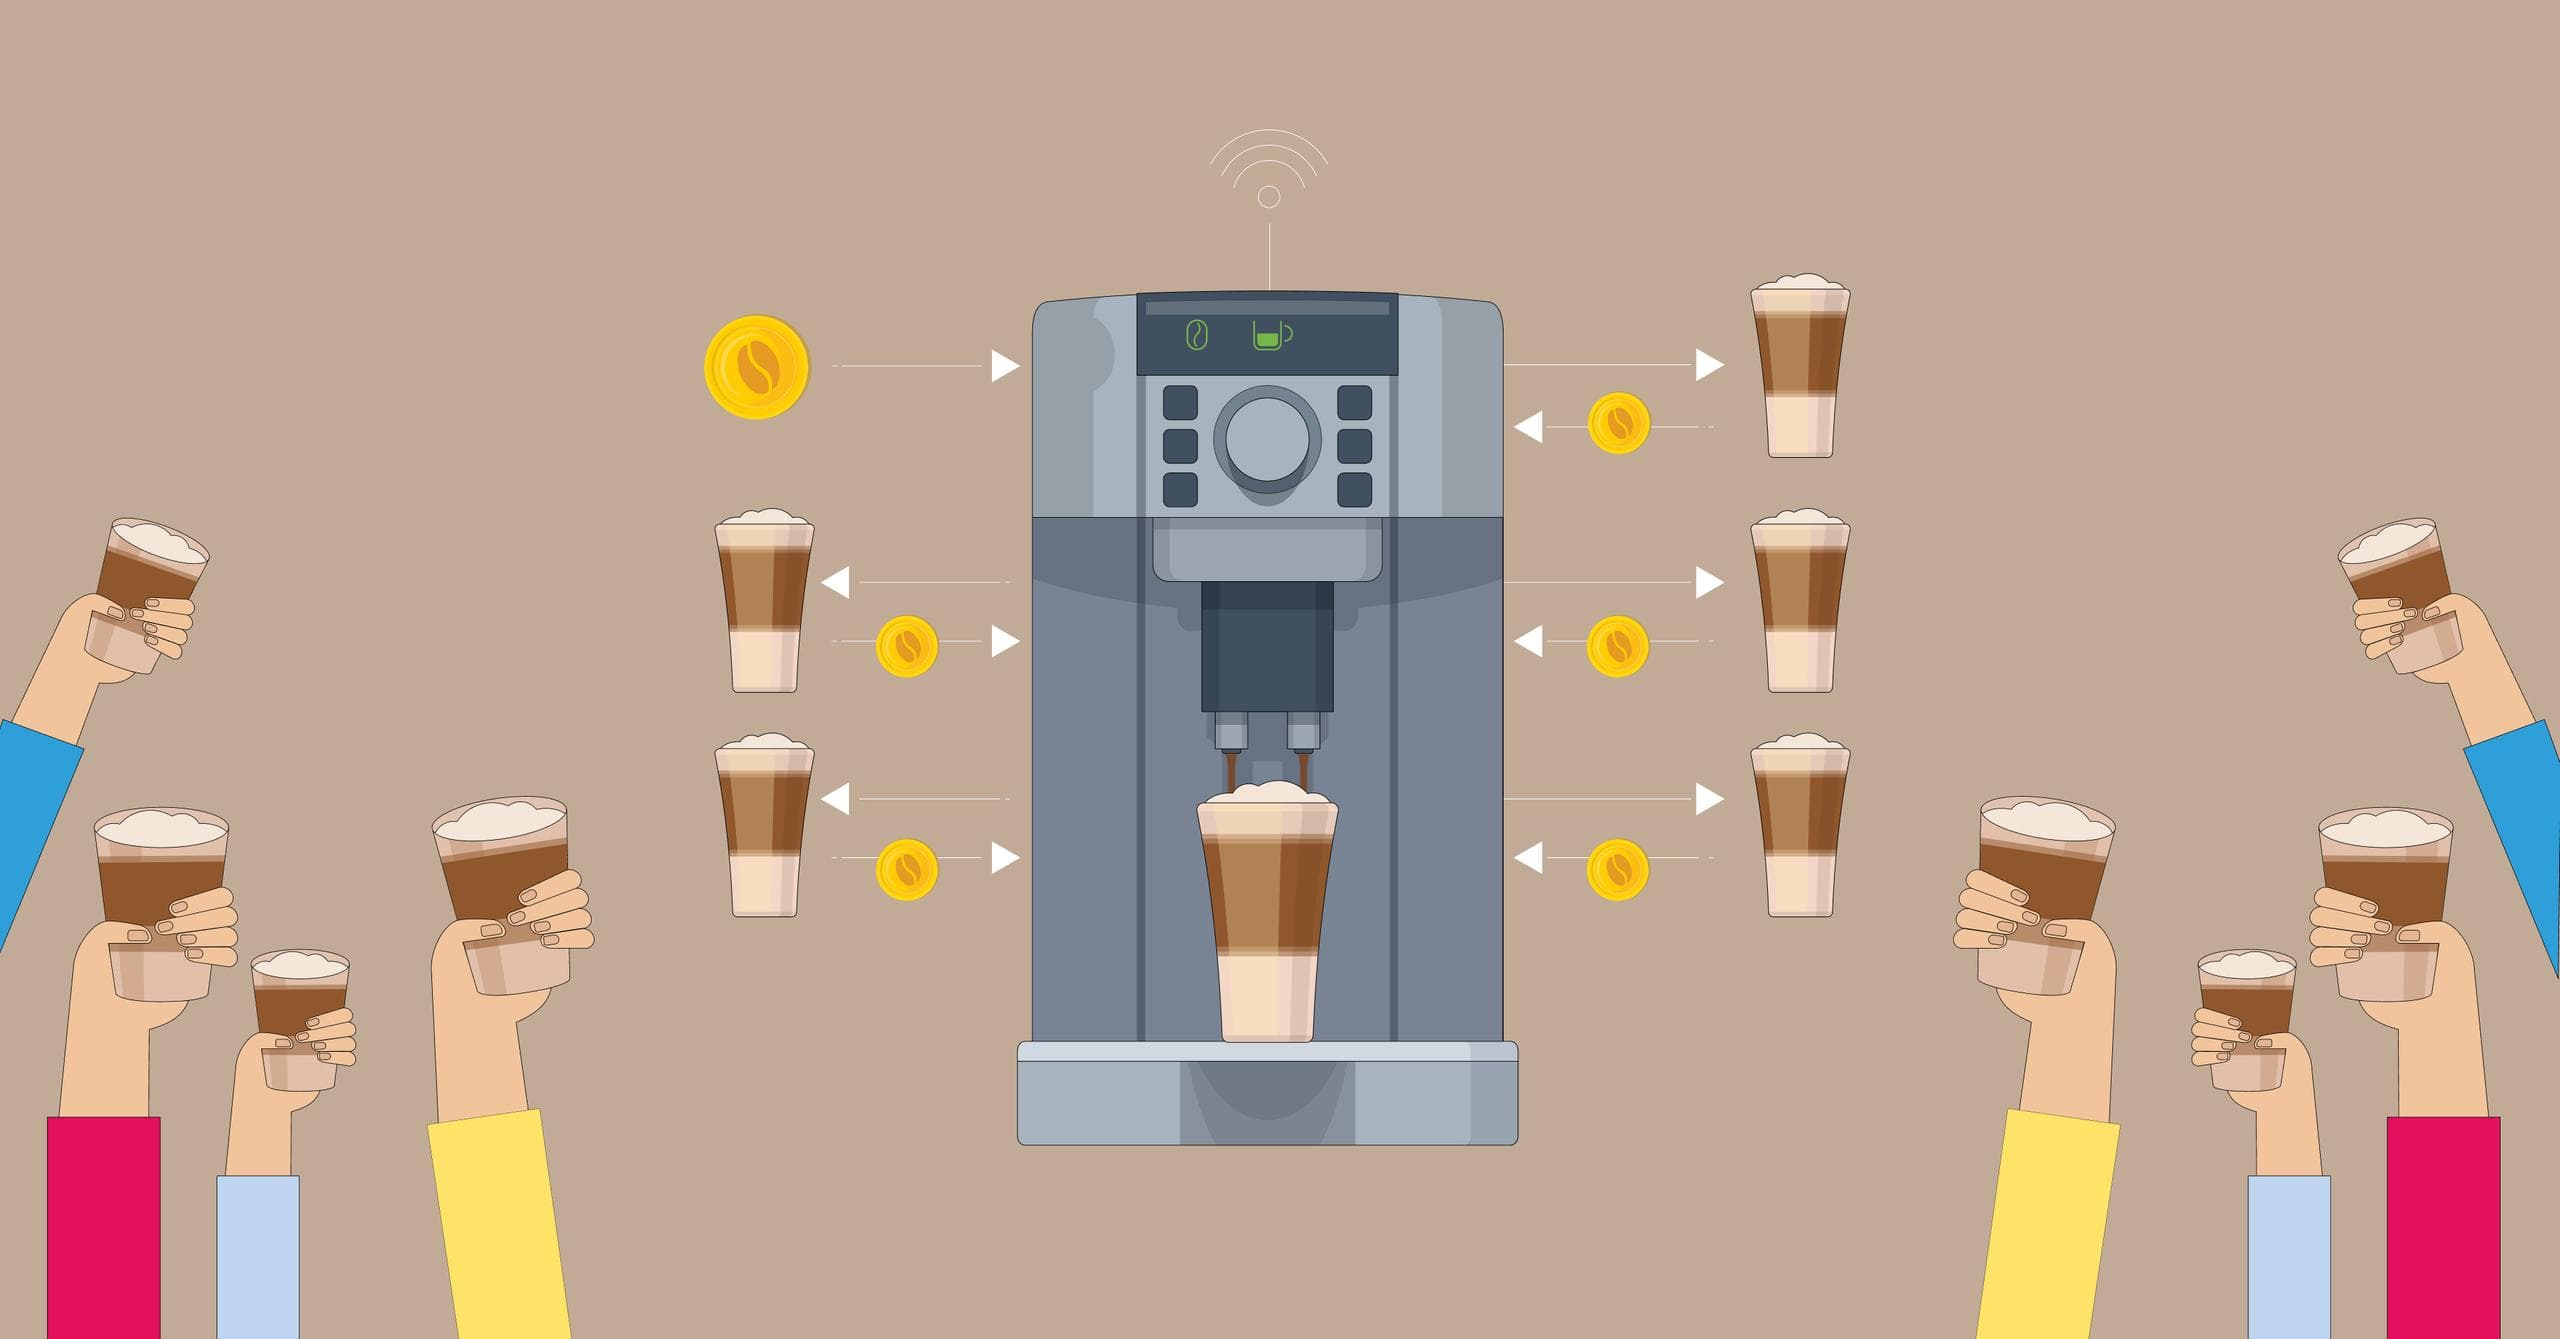 Blockchain-powered smart coffee machine